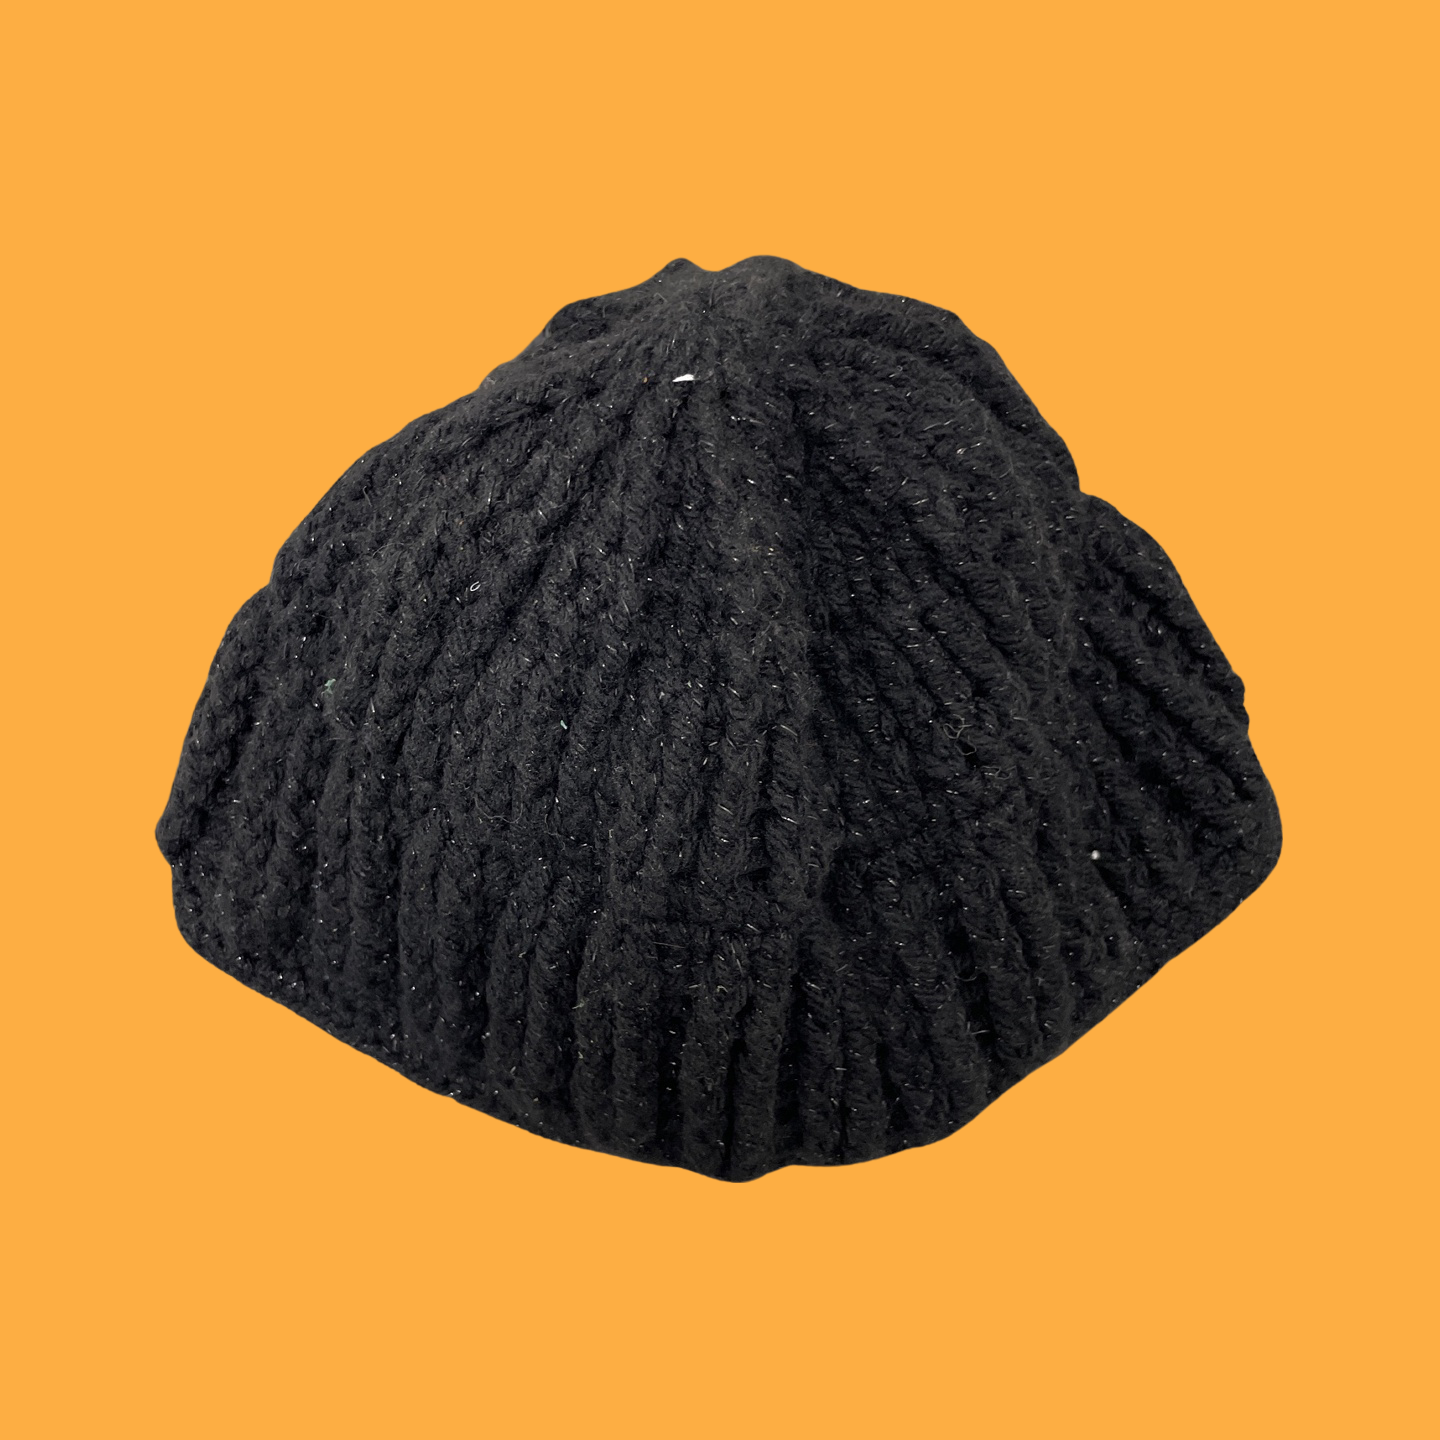 Rubynee Vintage y2k winter knitted black bob cap